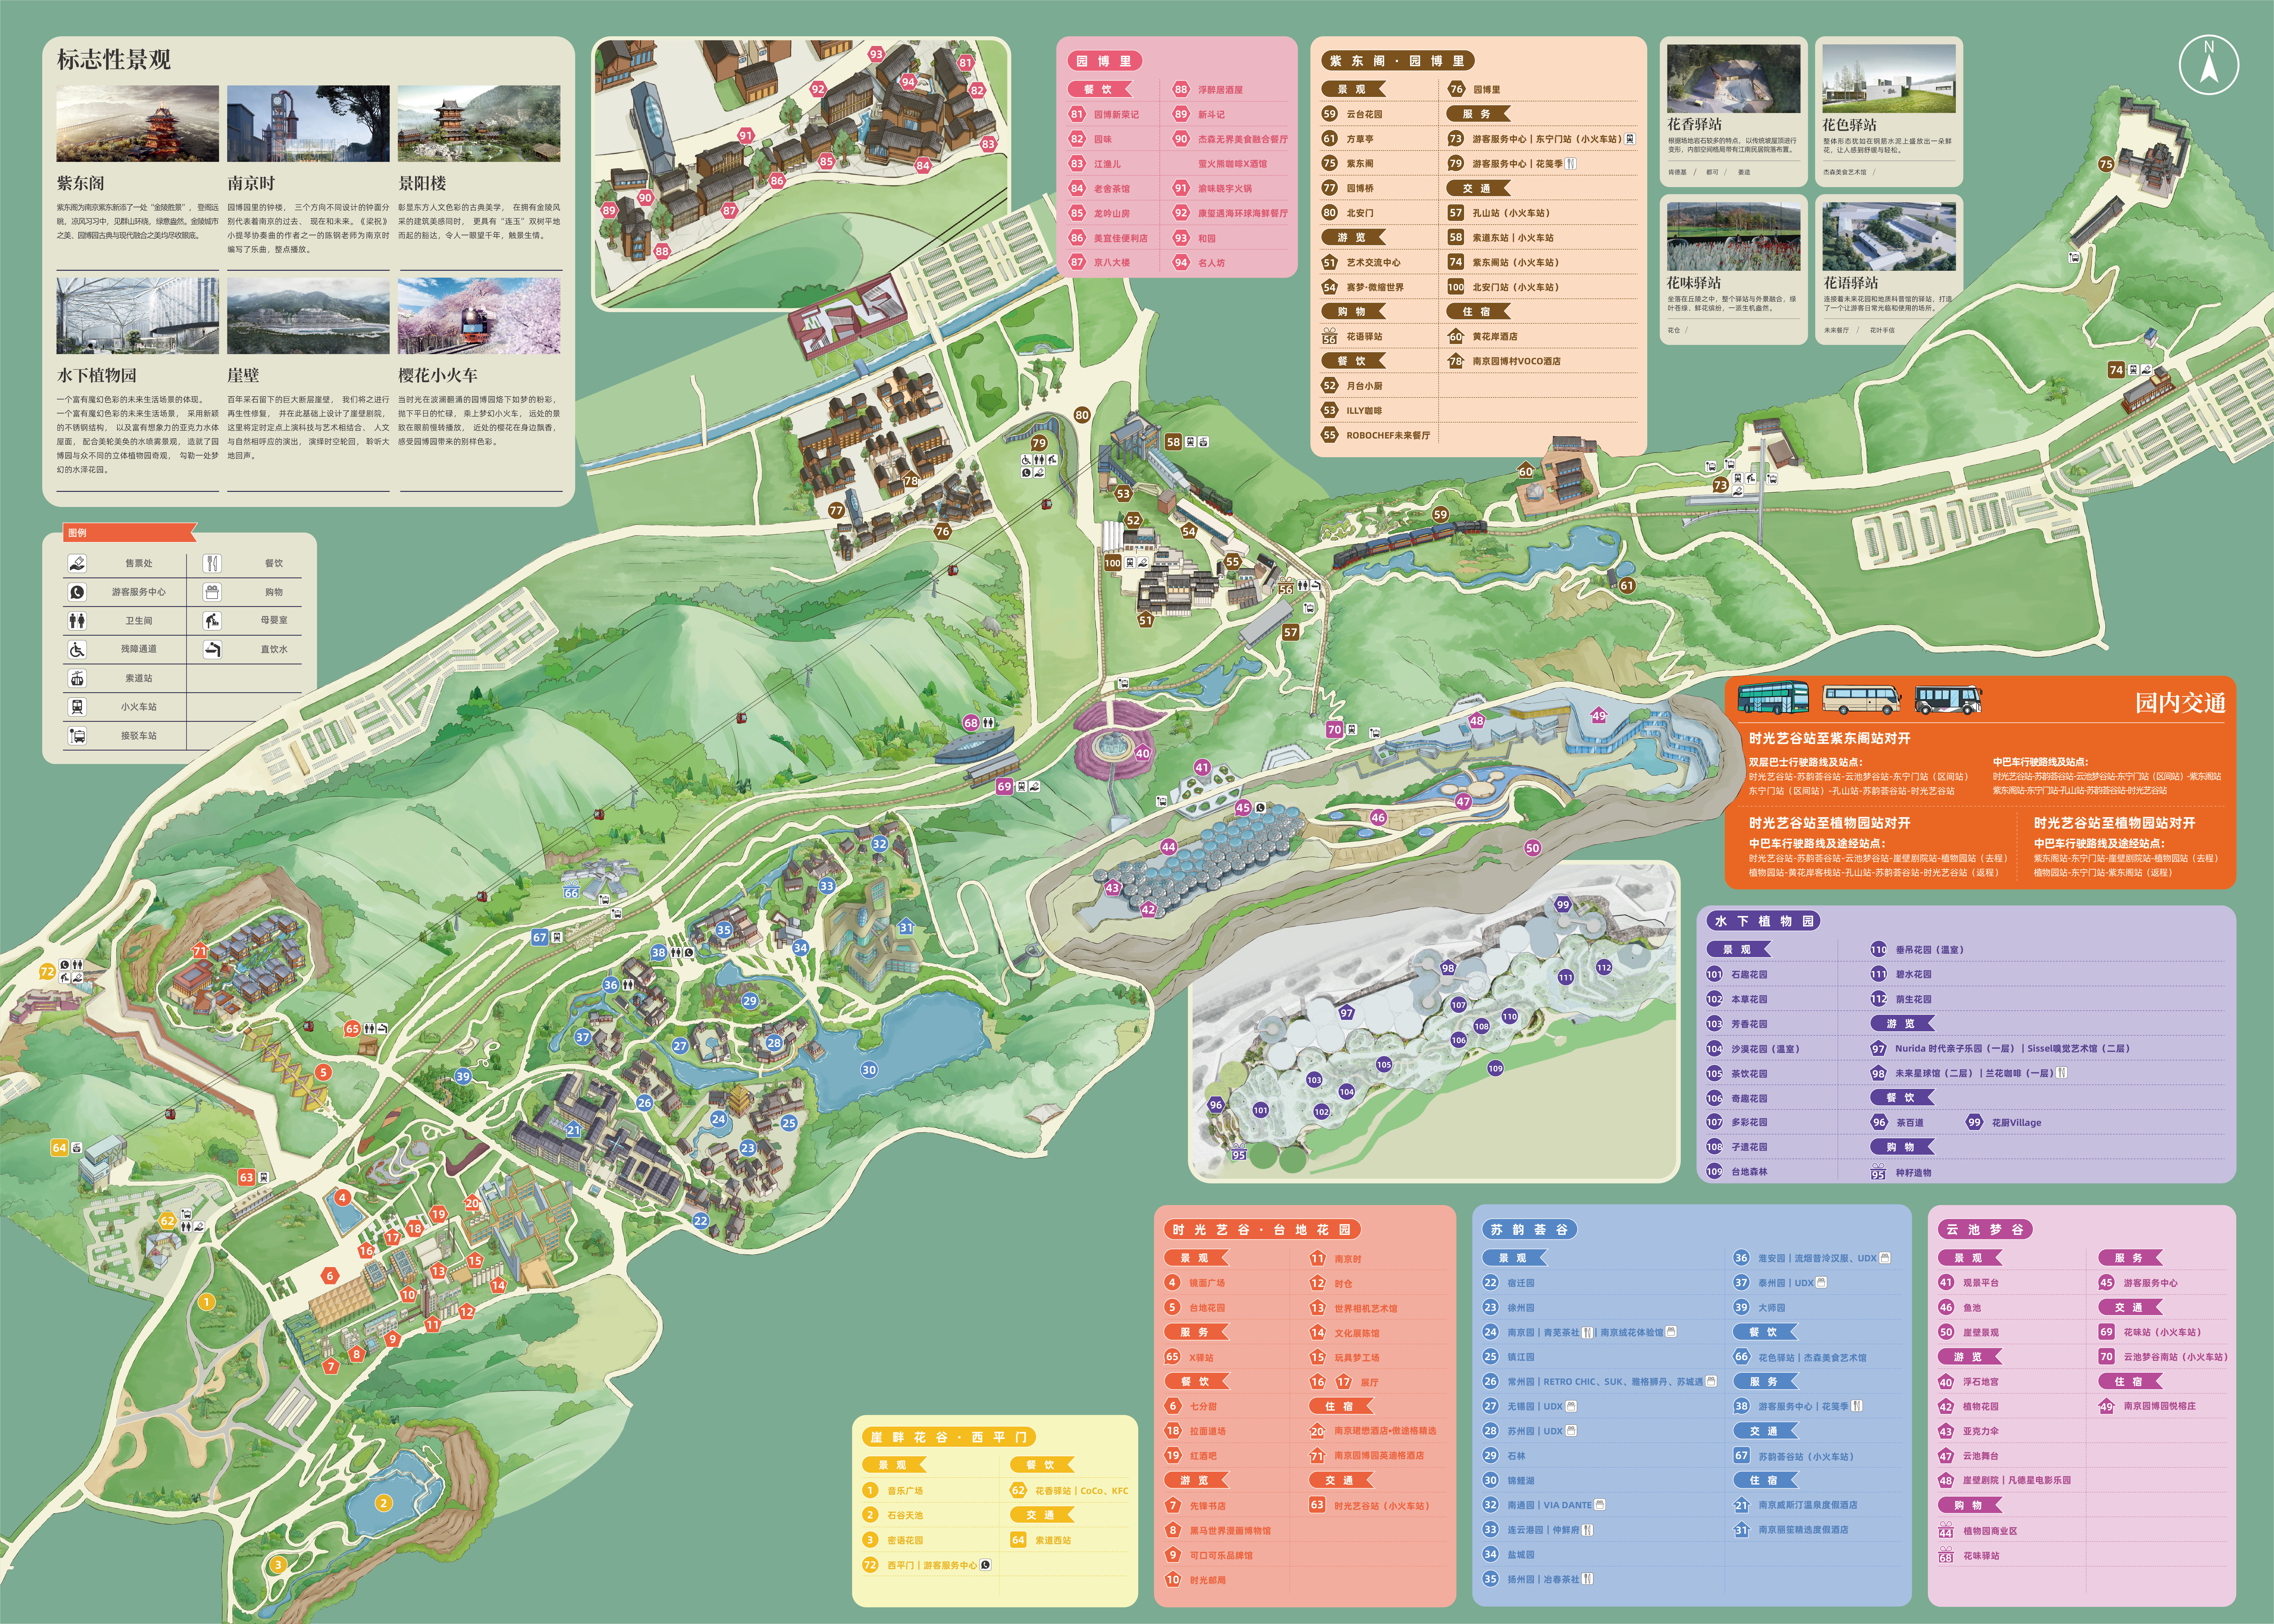 园博园景区地图(供参考)园博园开园后,将为游客带来更多新鲜玩法,乘着